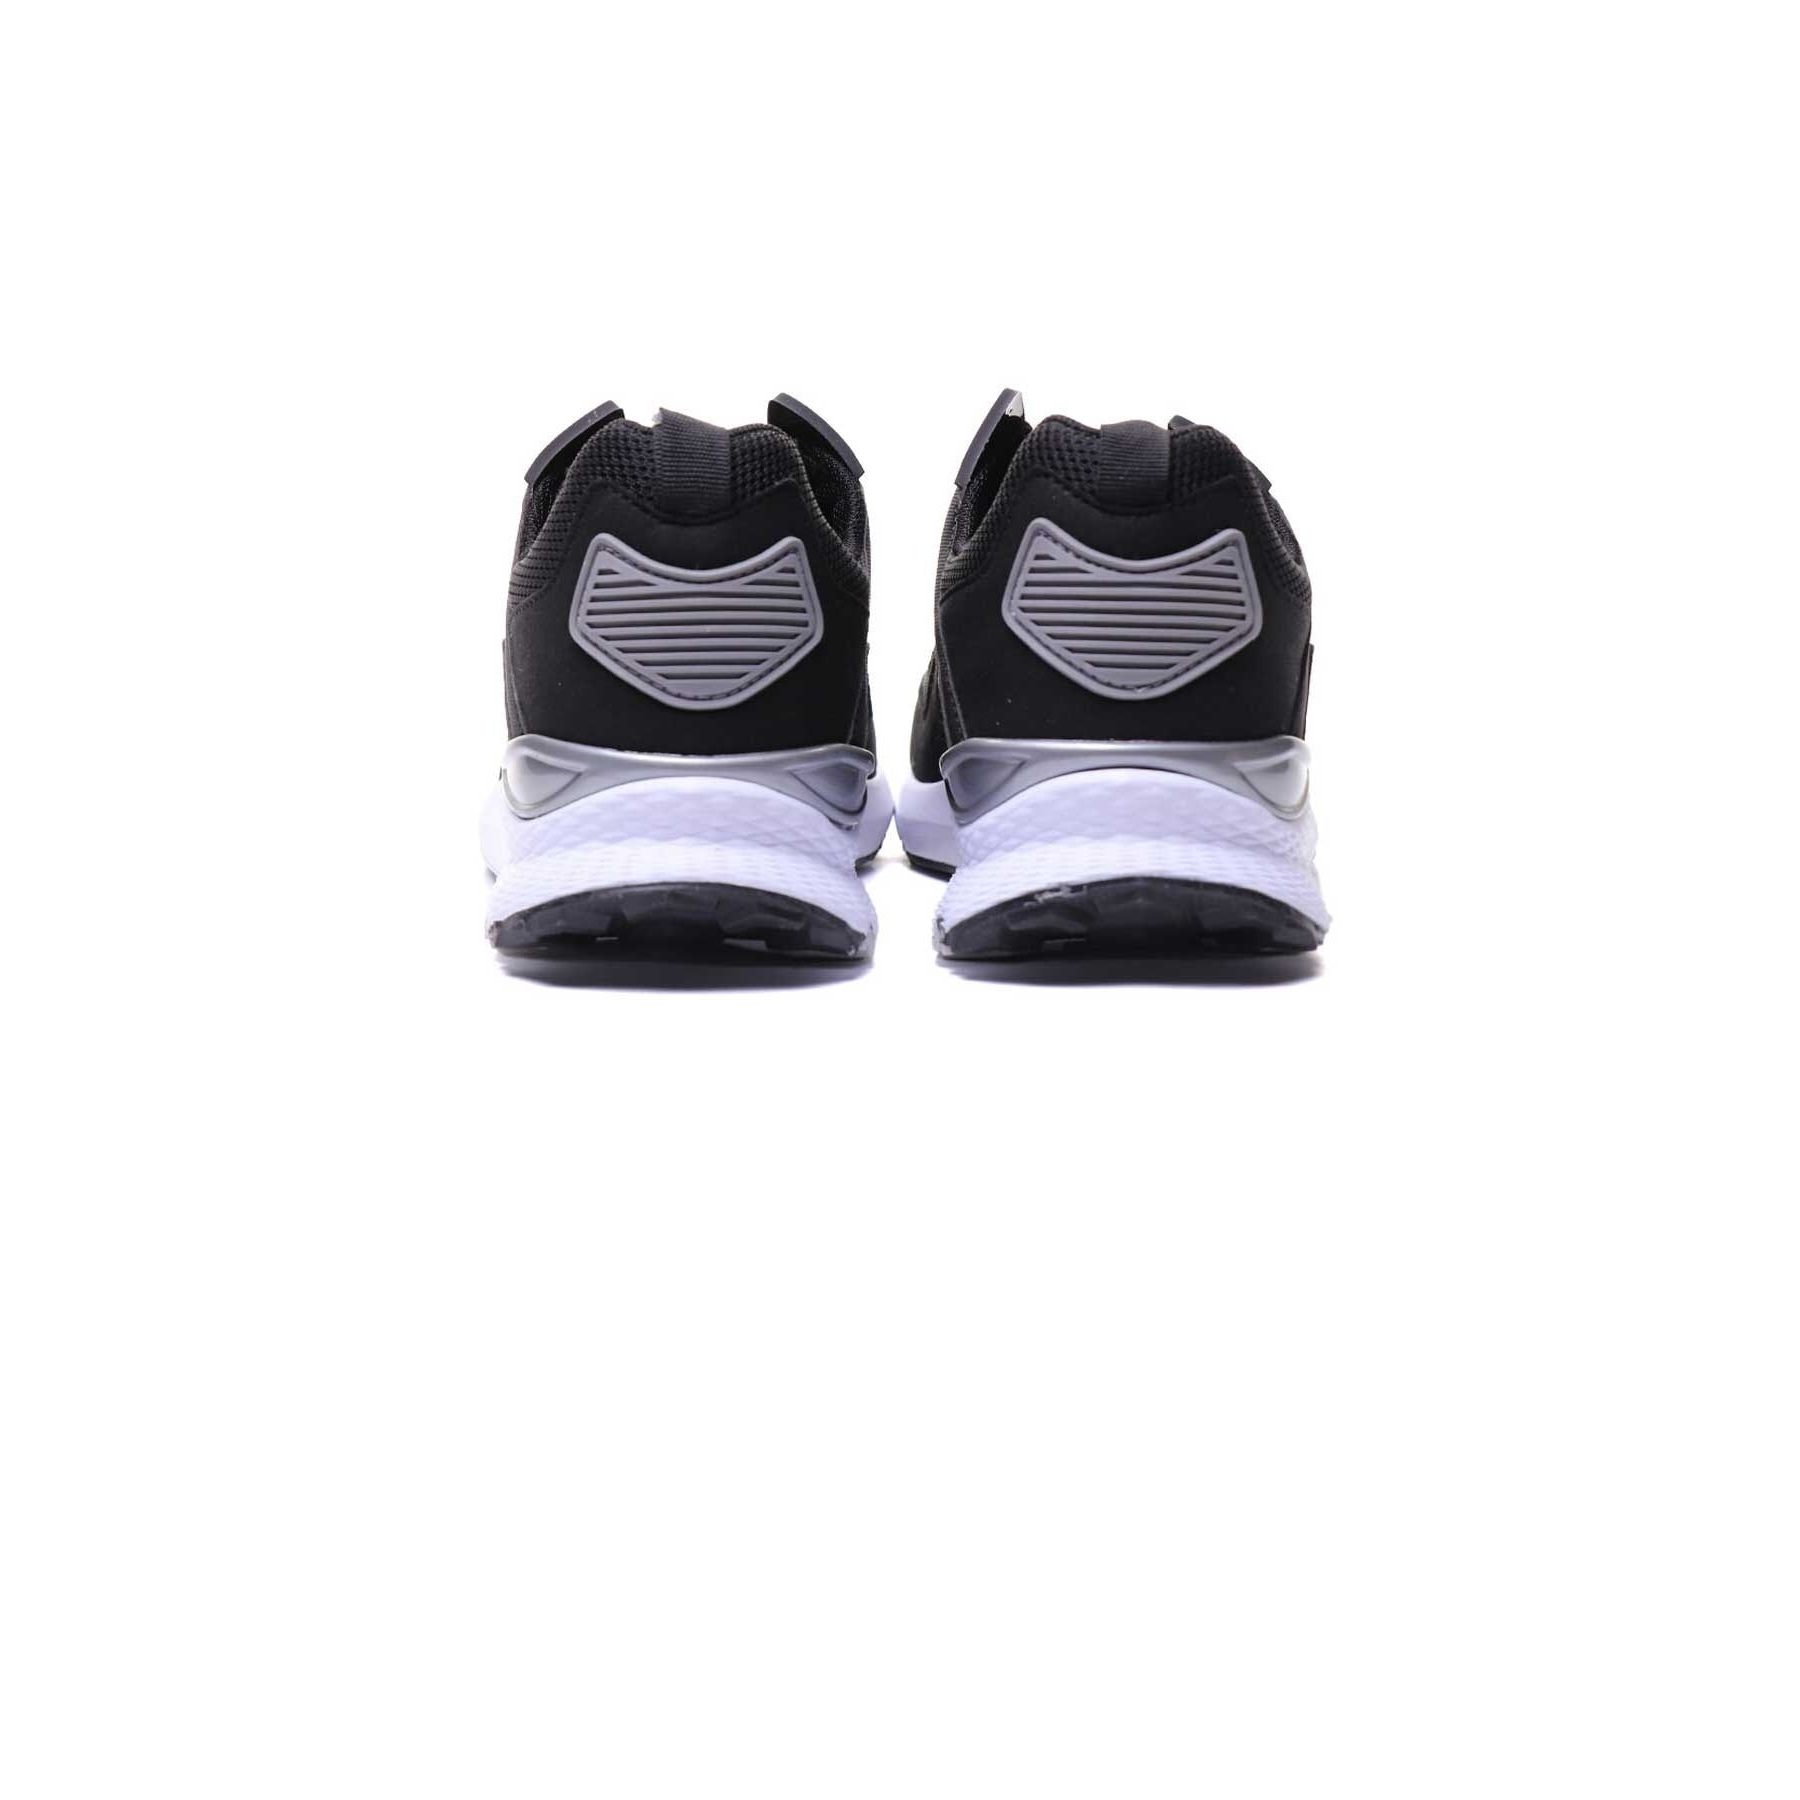 Hummel Vega X Siyah Spor Ayakkabı (900286-2001)